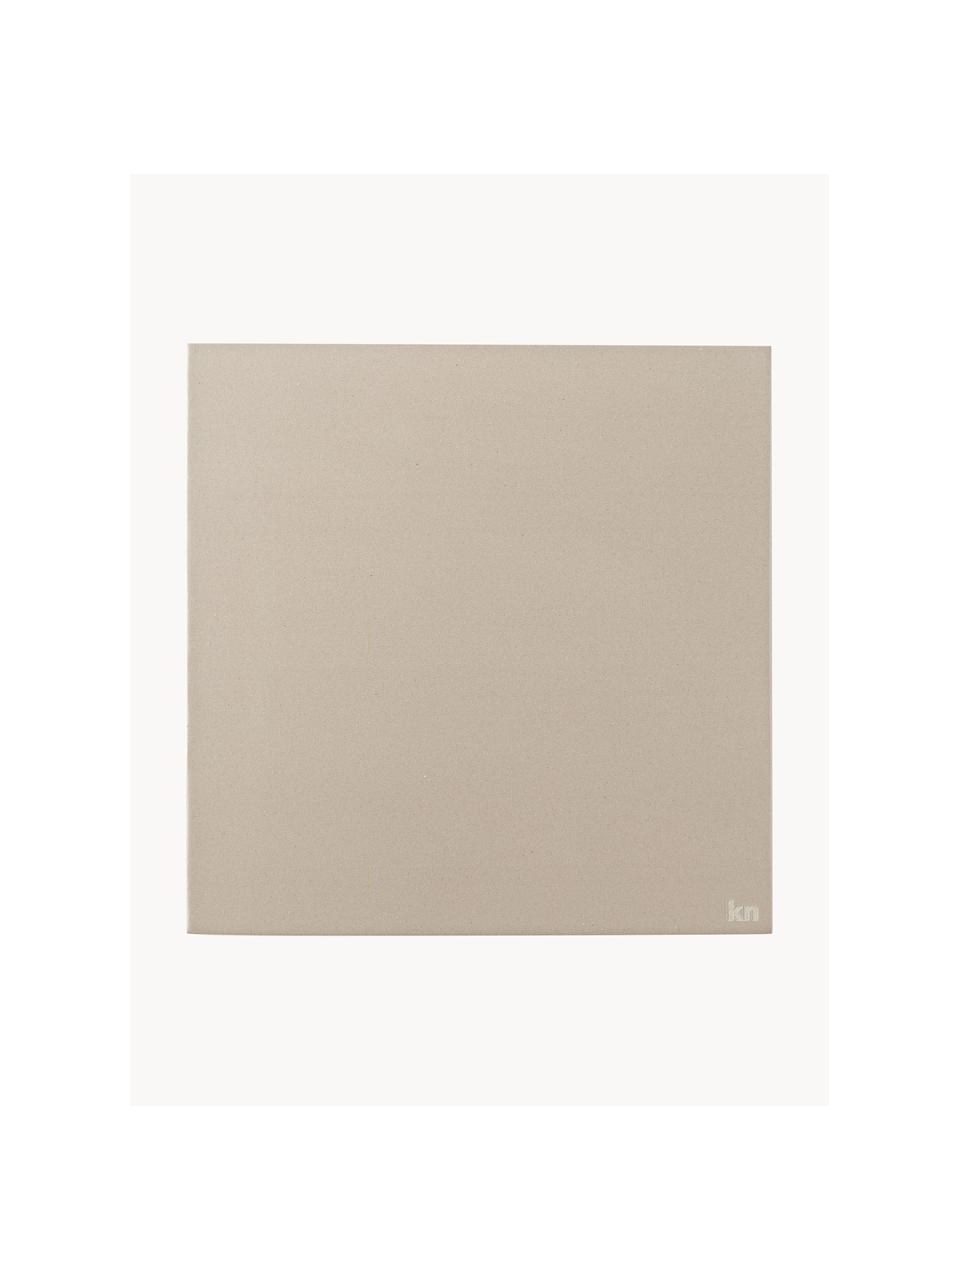 Sottopentola Tile, Ceramica, Beige chiaro, Larg. 20 x Prof. 20 cm